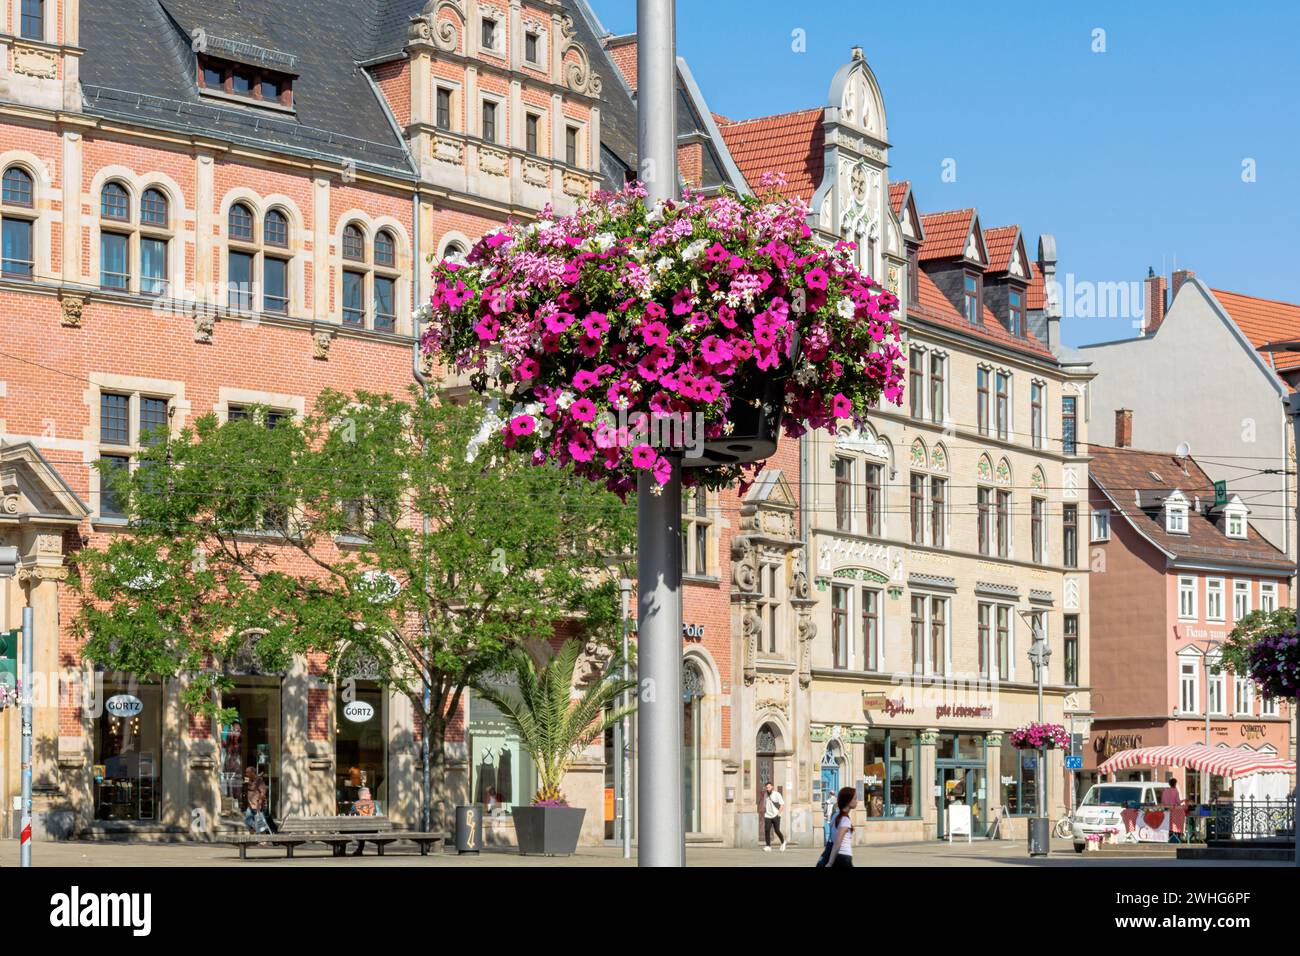 Promenade avec des décorations florales, colère à Erfurt, Thuringe, Allemagne Banque D'Images